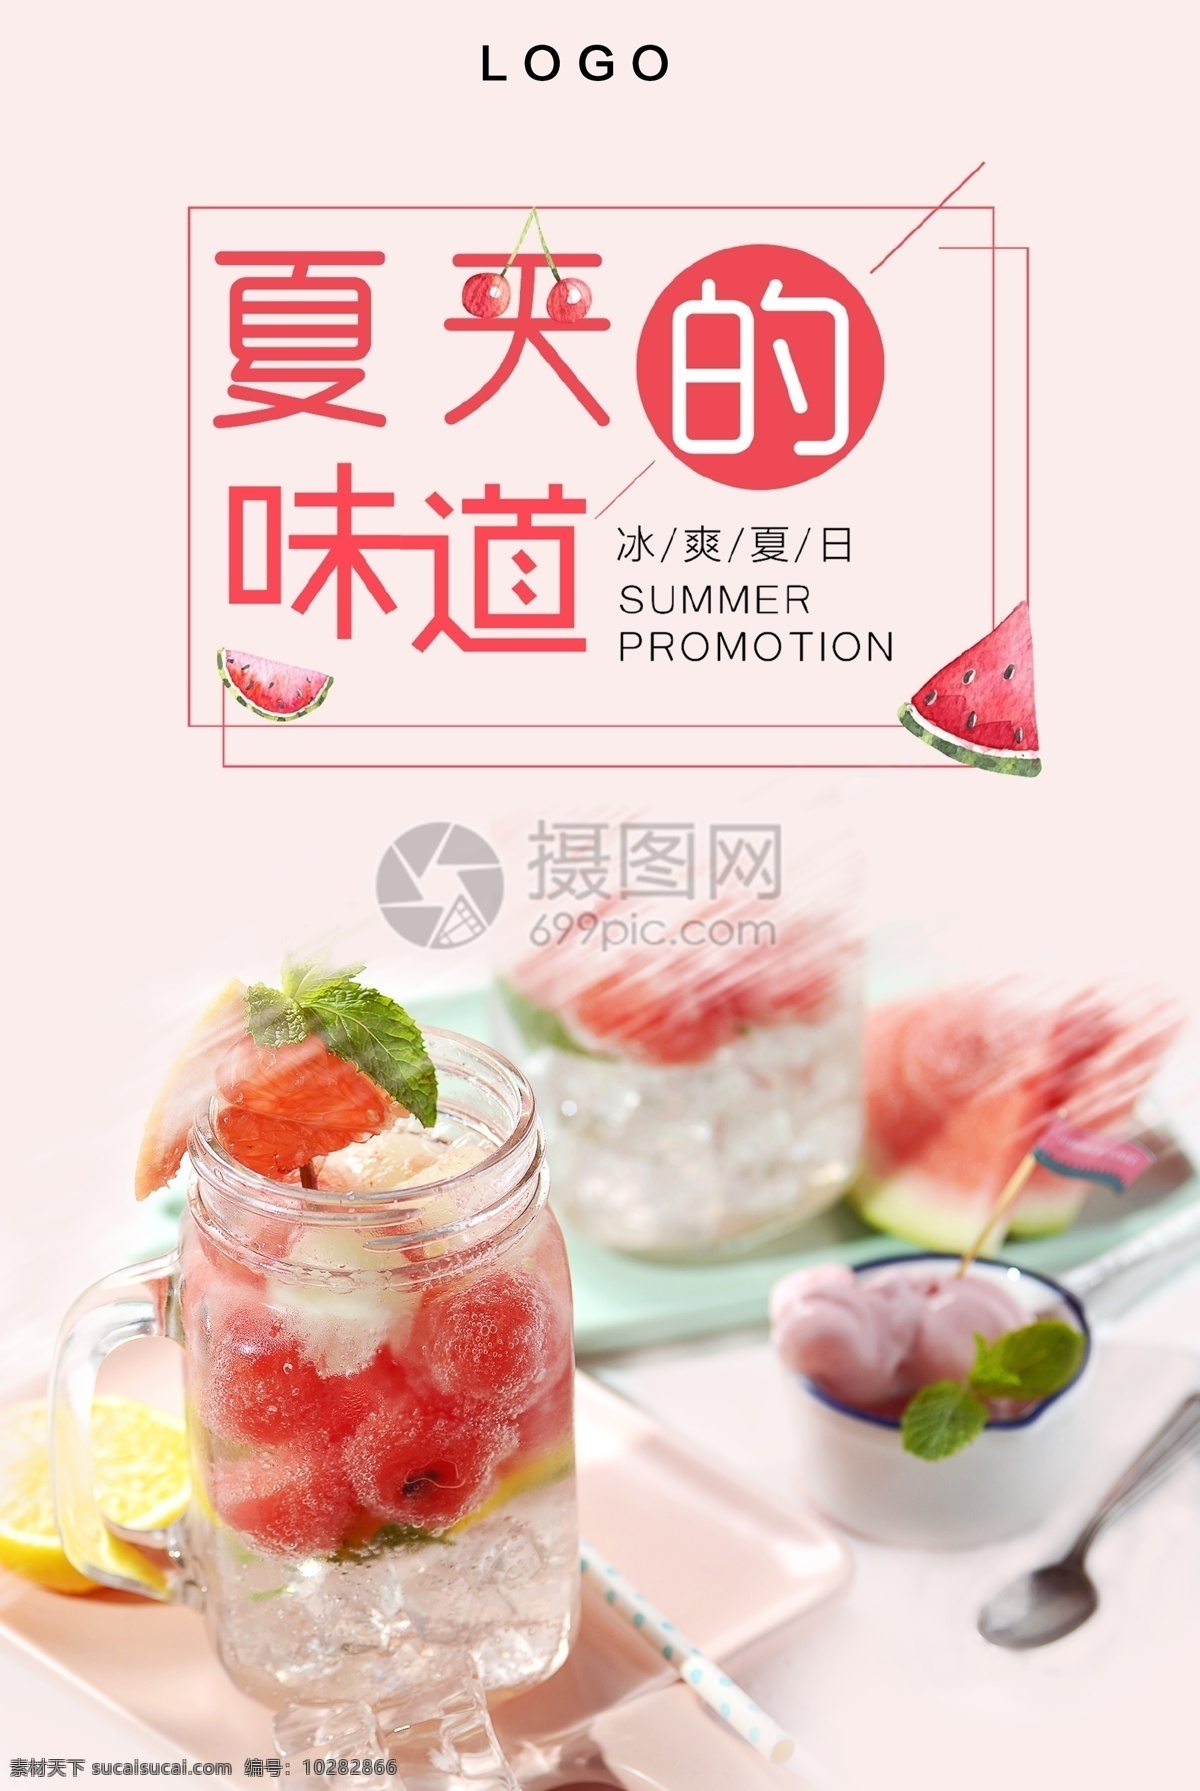 夏天 味道 美食 海报 水果 水果茶 fruit juice 清凉 凉快 夏天的味道 美食餐饮